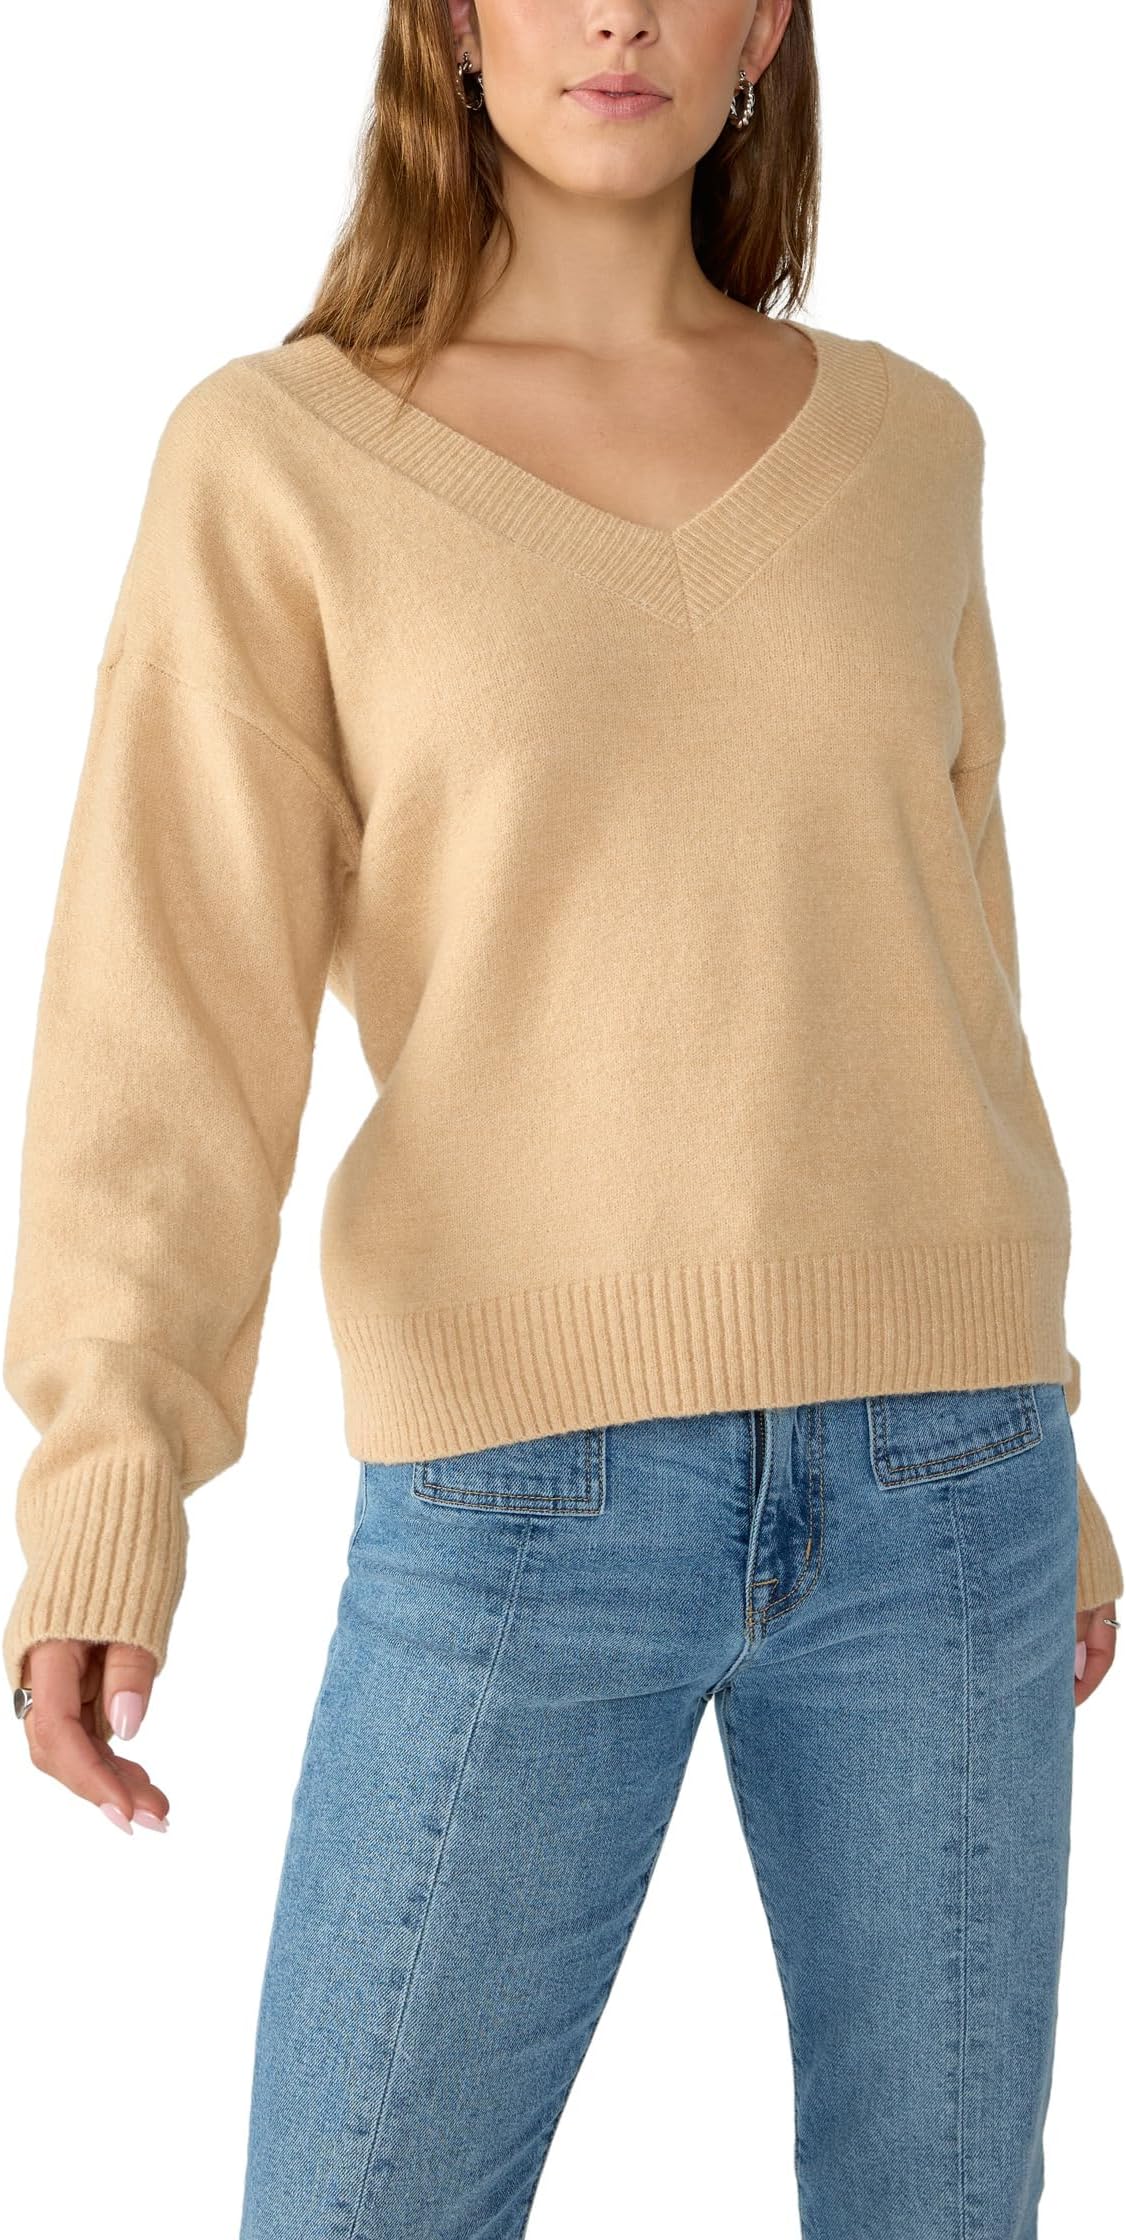 Легкий легкий пуловер с V-образным вырезом Sanctuary, цвет Roasted Cappuccino